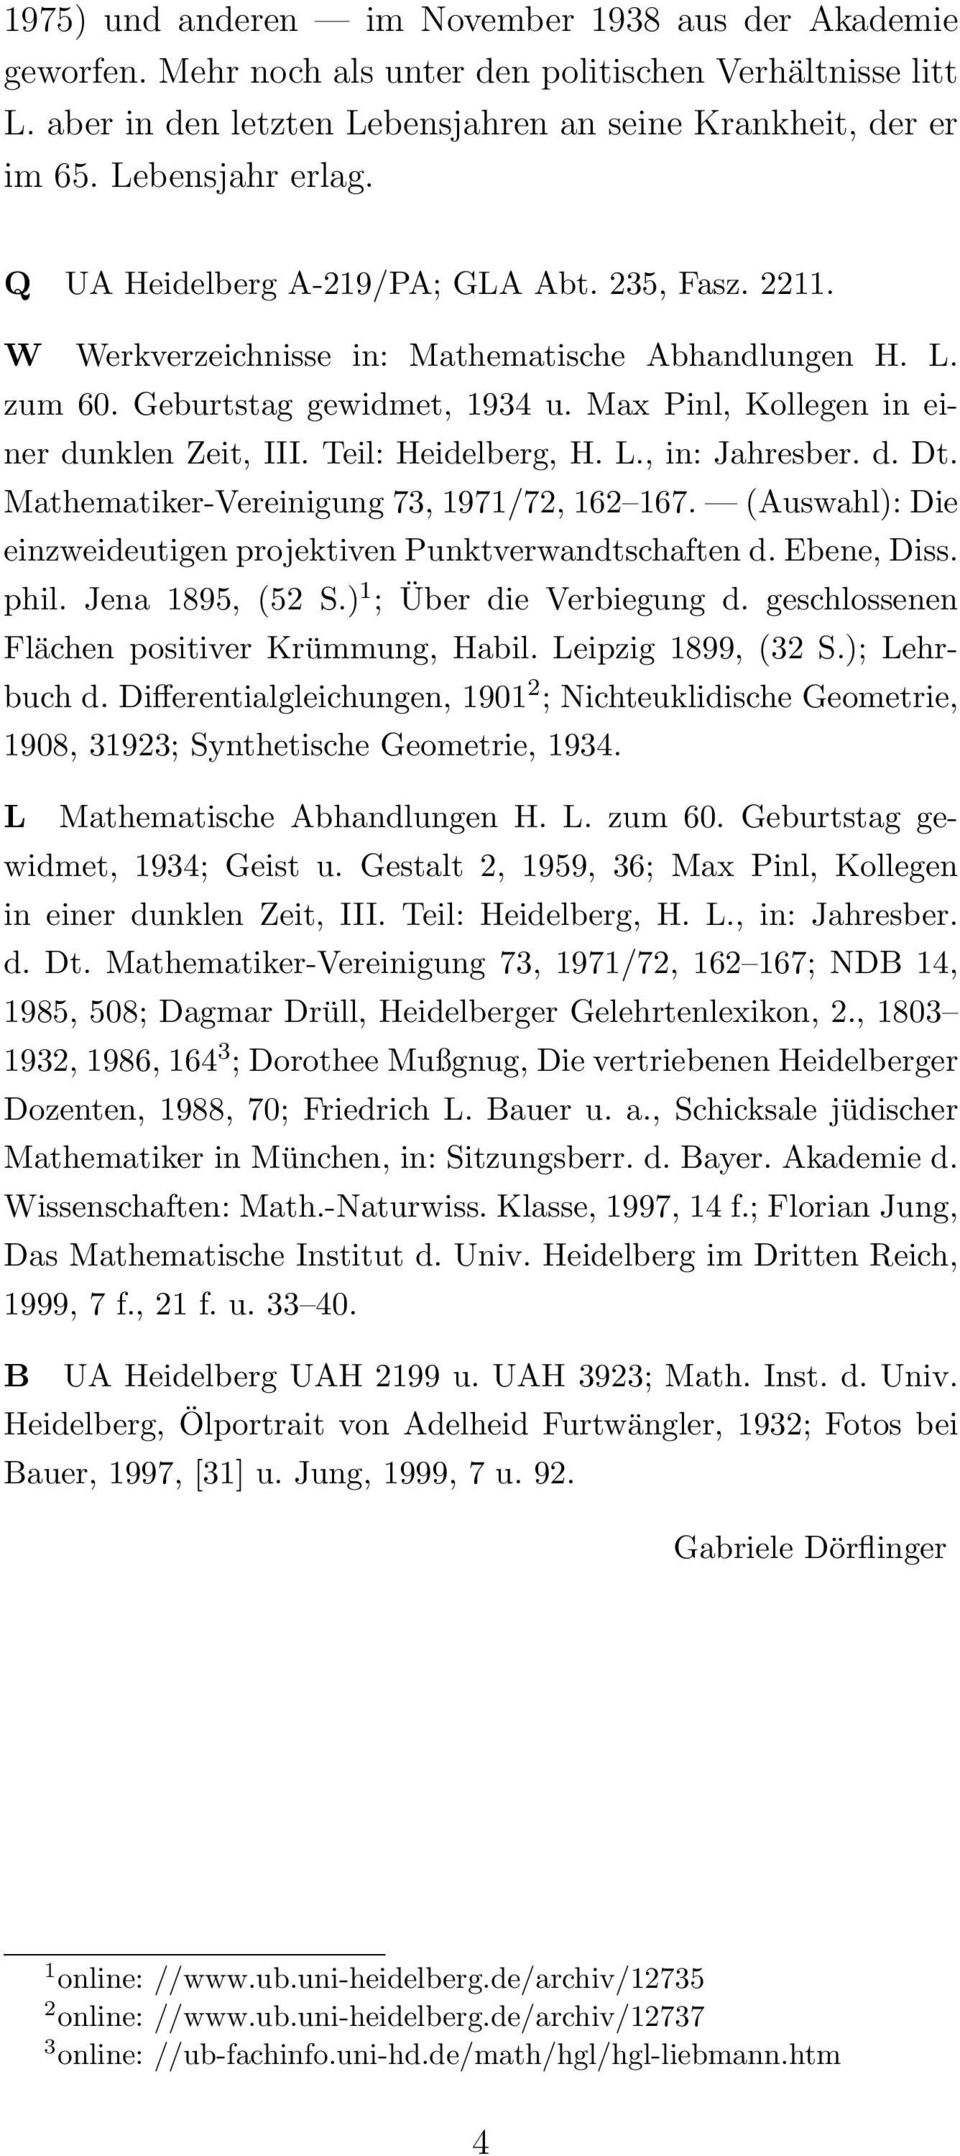 Max Pinl, Kollegen in einer dunklen Zeit, III. Teil: Heidelberg, H. L., in: Jahresber. d. Dt. Mathematiker-Vereinigung 73, 1971/72, 162 167.